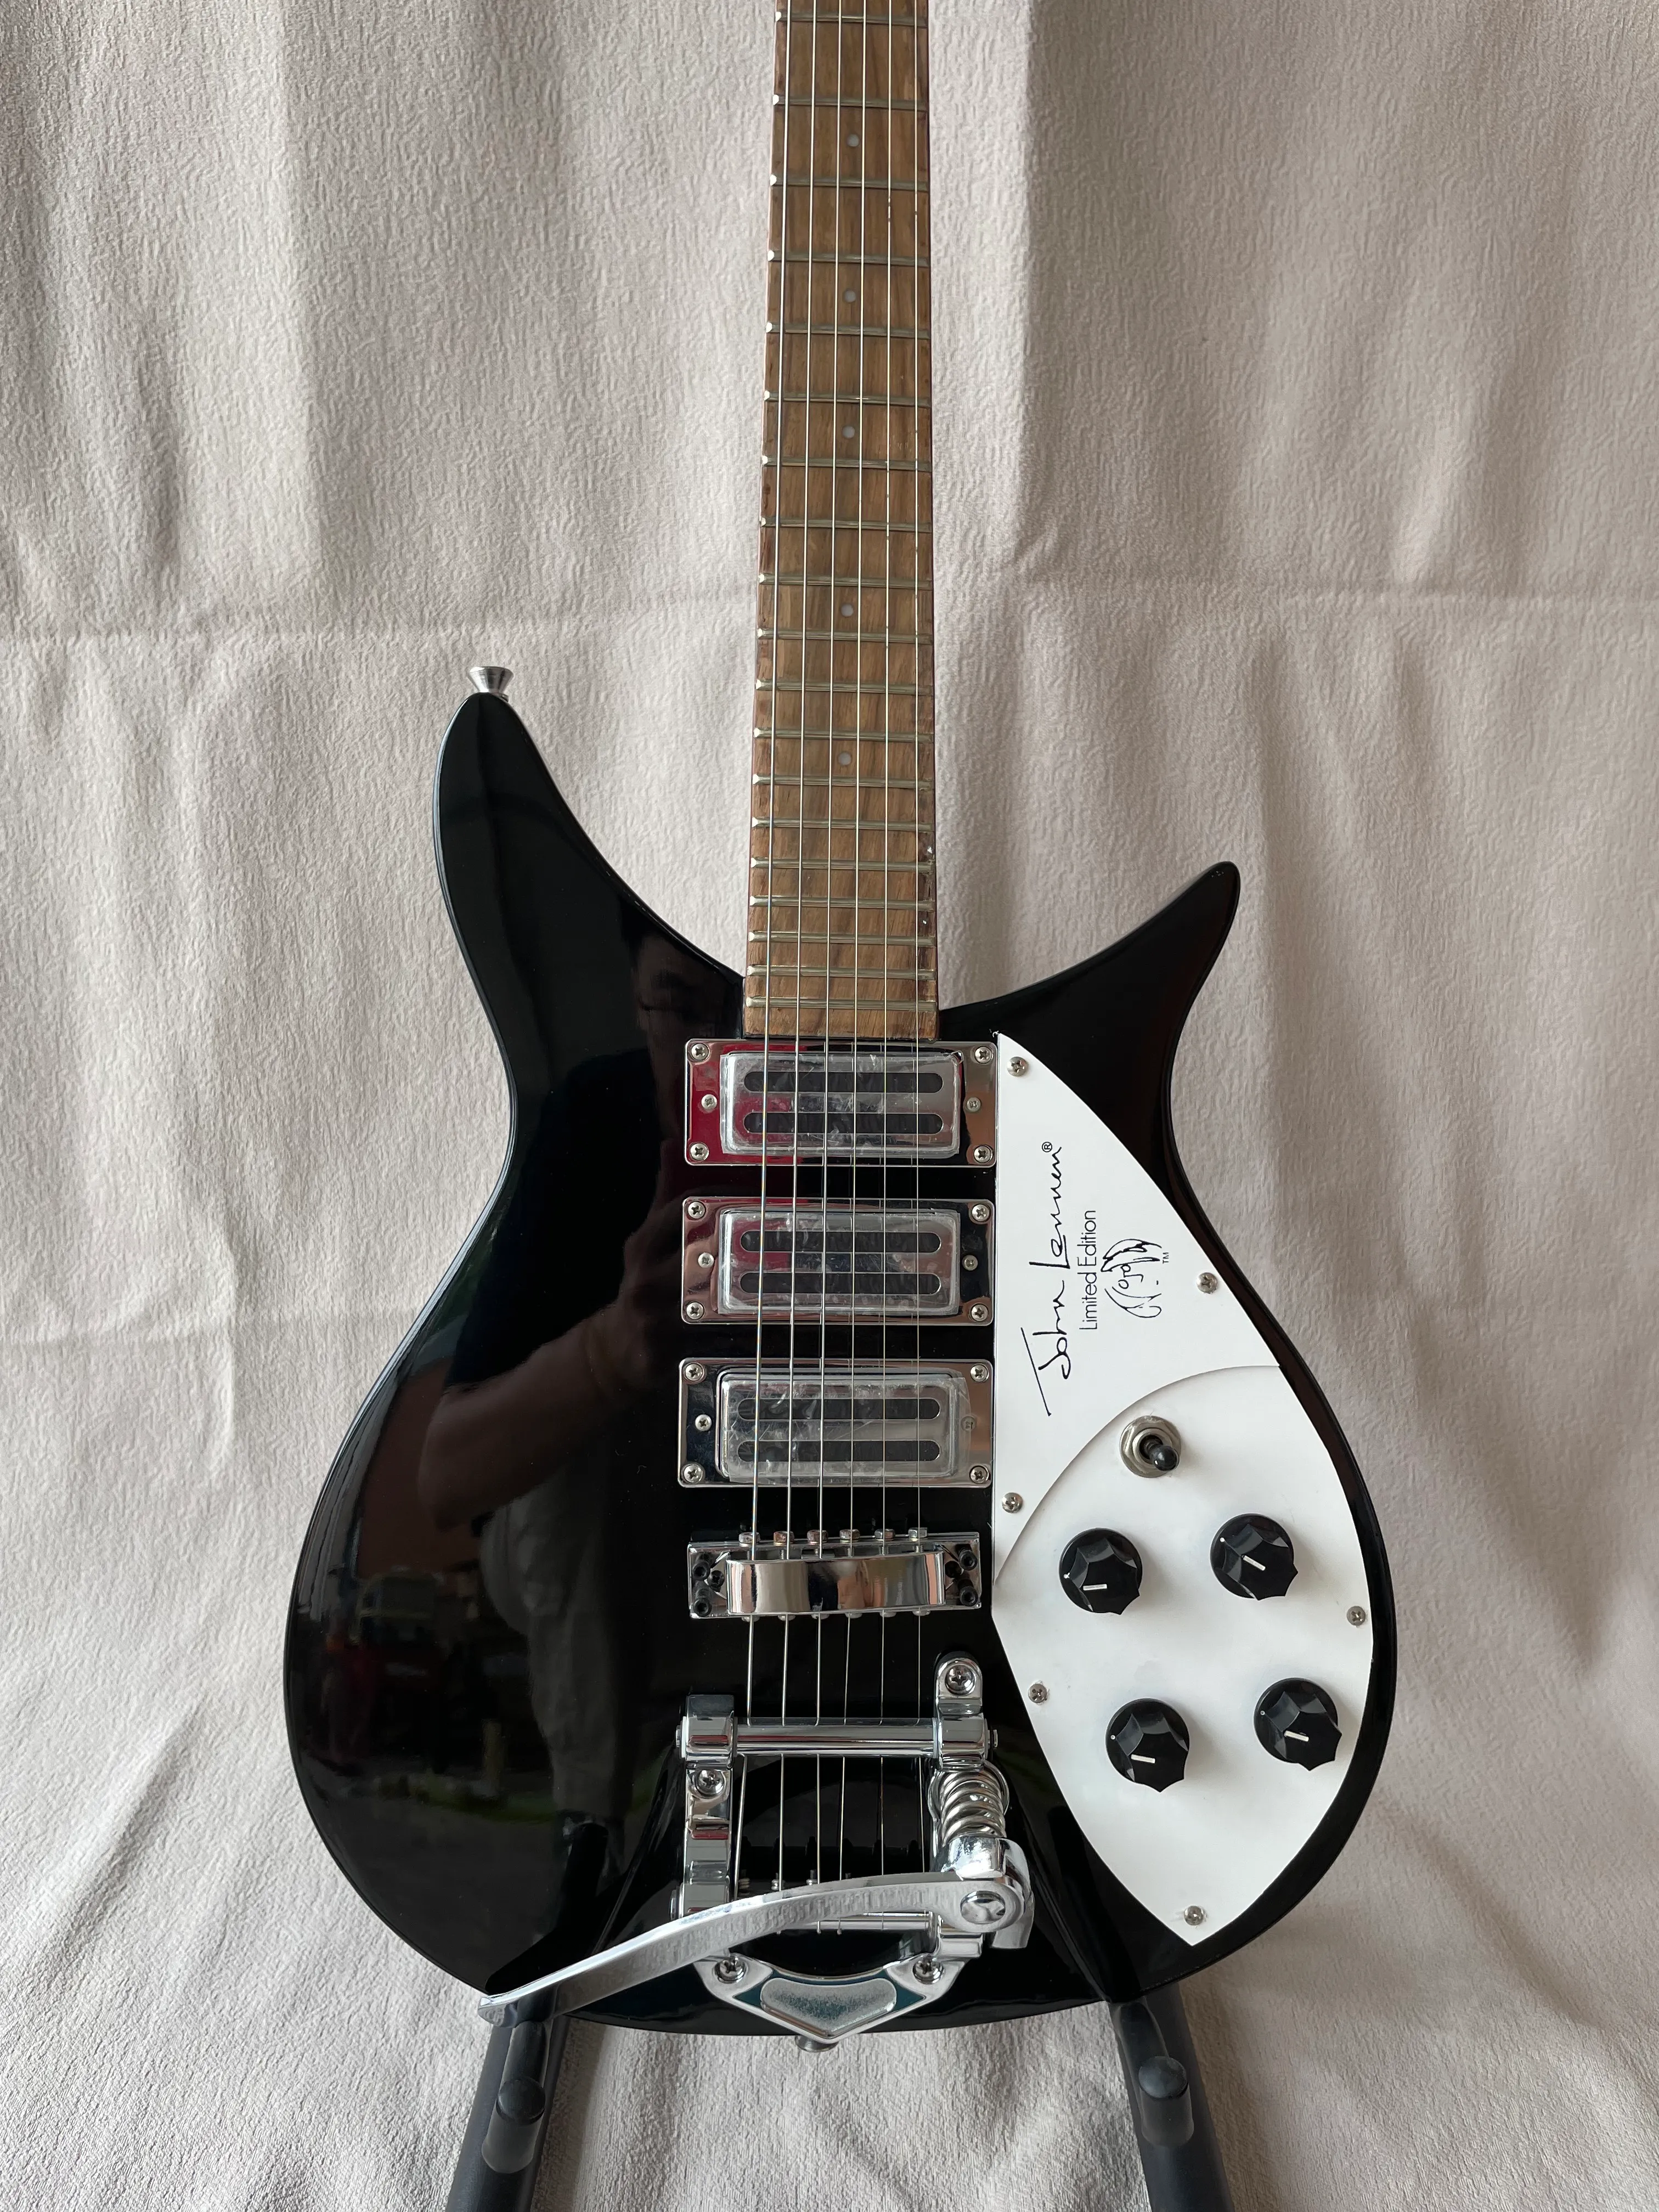 Guitarra eléctrica 325 con sistema Super Tremolos, puente metálico, Color negro, Guitarra de alta calidad, envío gratis